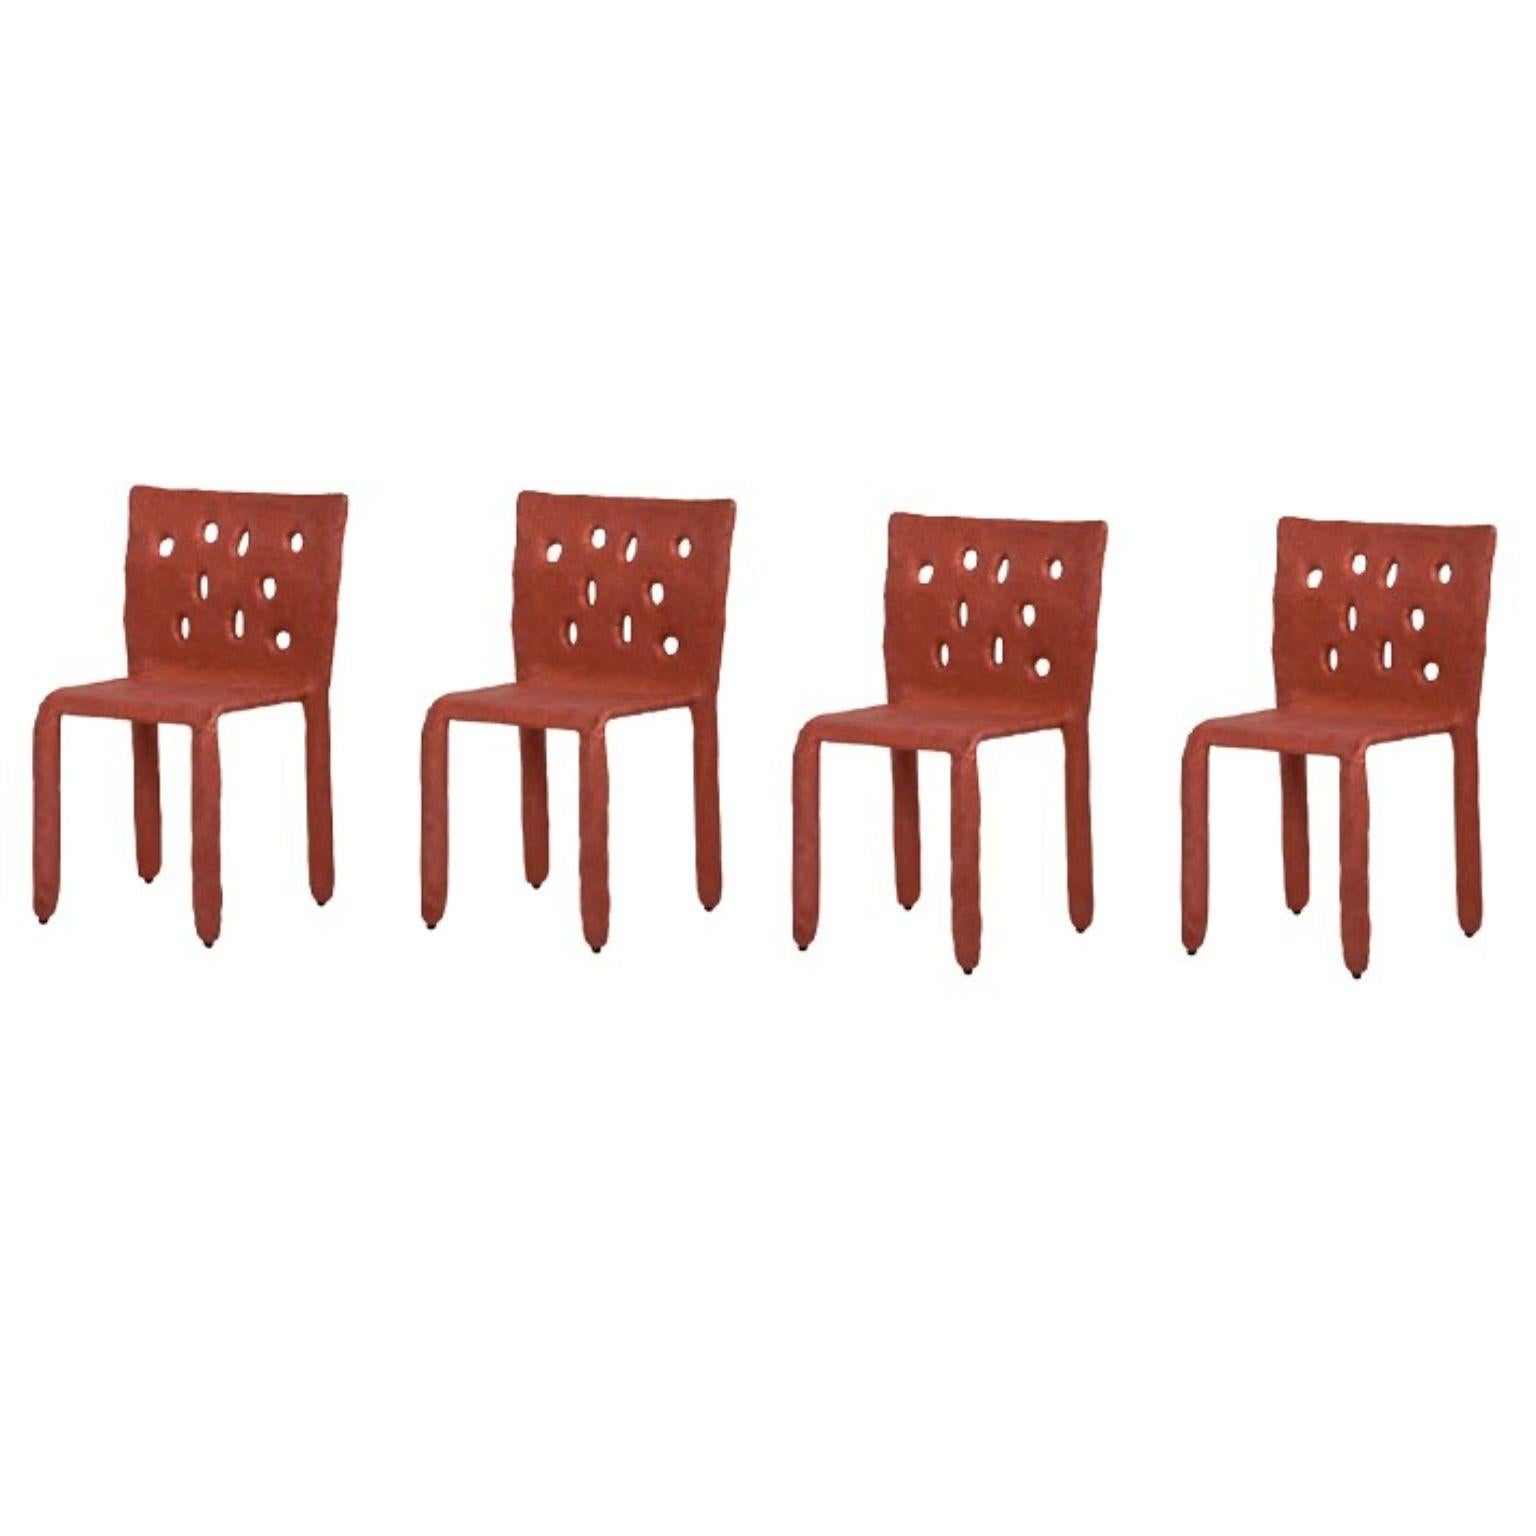 Ensemble de 4 chaises rouges sculptées Contemporary par Faina
Design : Victoriya Yakusha
MATERIAL : acier, caoutchouc de lin, biopolymère, cellulose.
Dimensions : hauteur 82 x largeur 54 x profondeur des pieds 45 cm
 Poids : 15 kilos.

Conçus dans